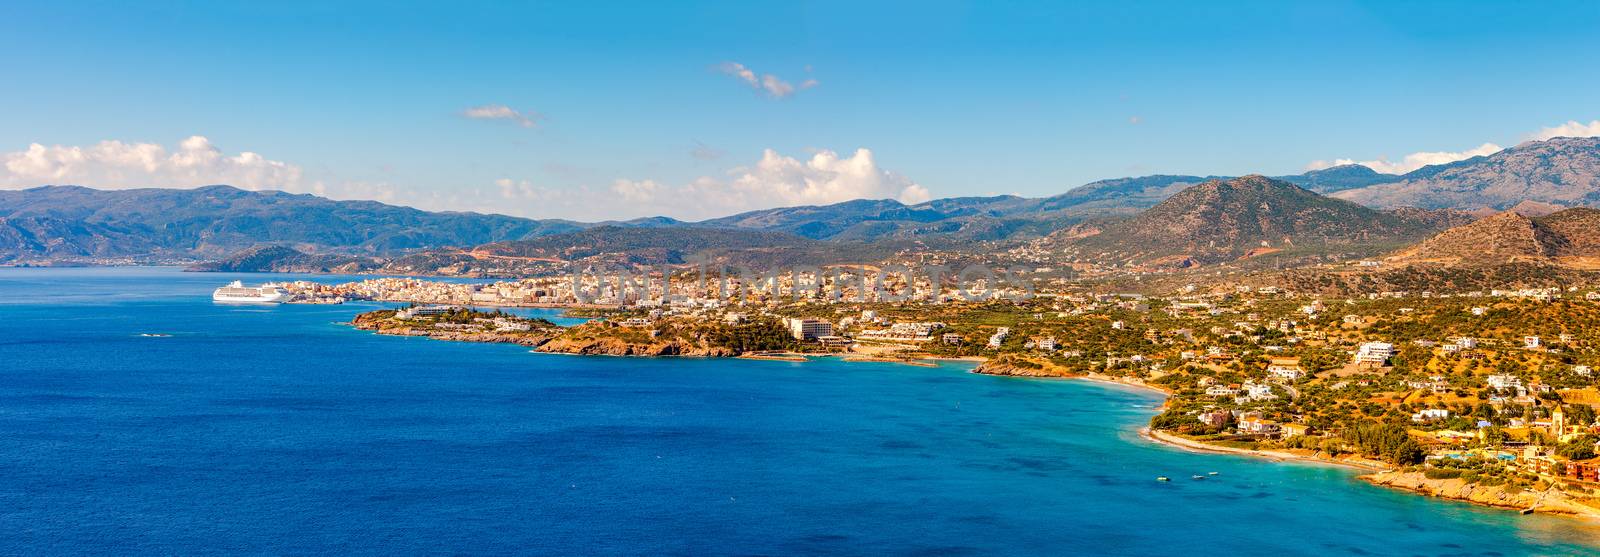 Agios Nikolaos and Mirabello Bay, Crete, Greece by vladimir_sklyarov